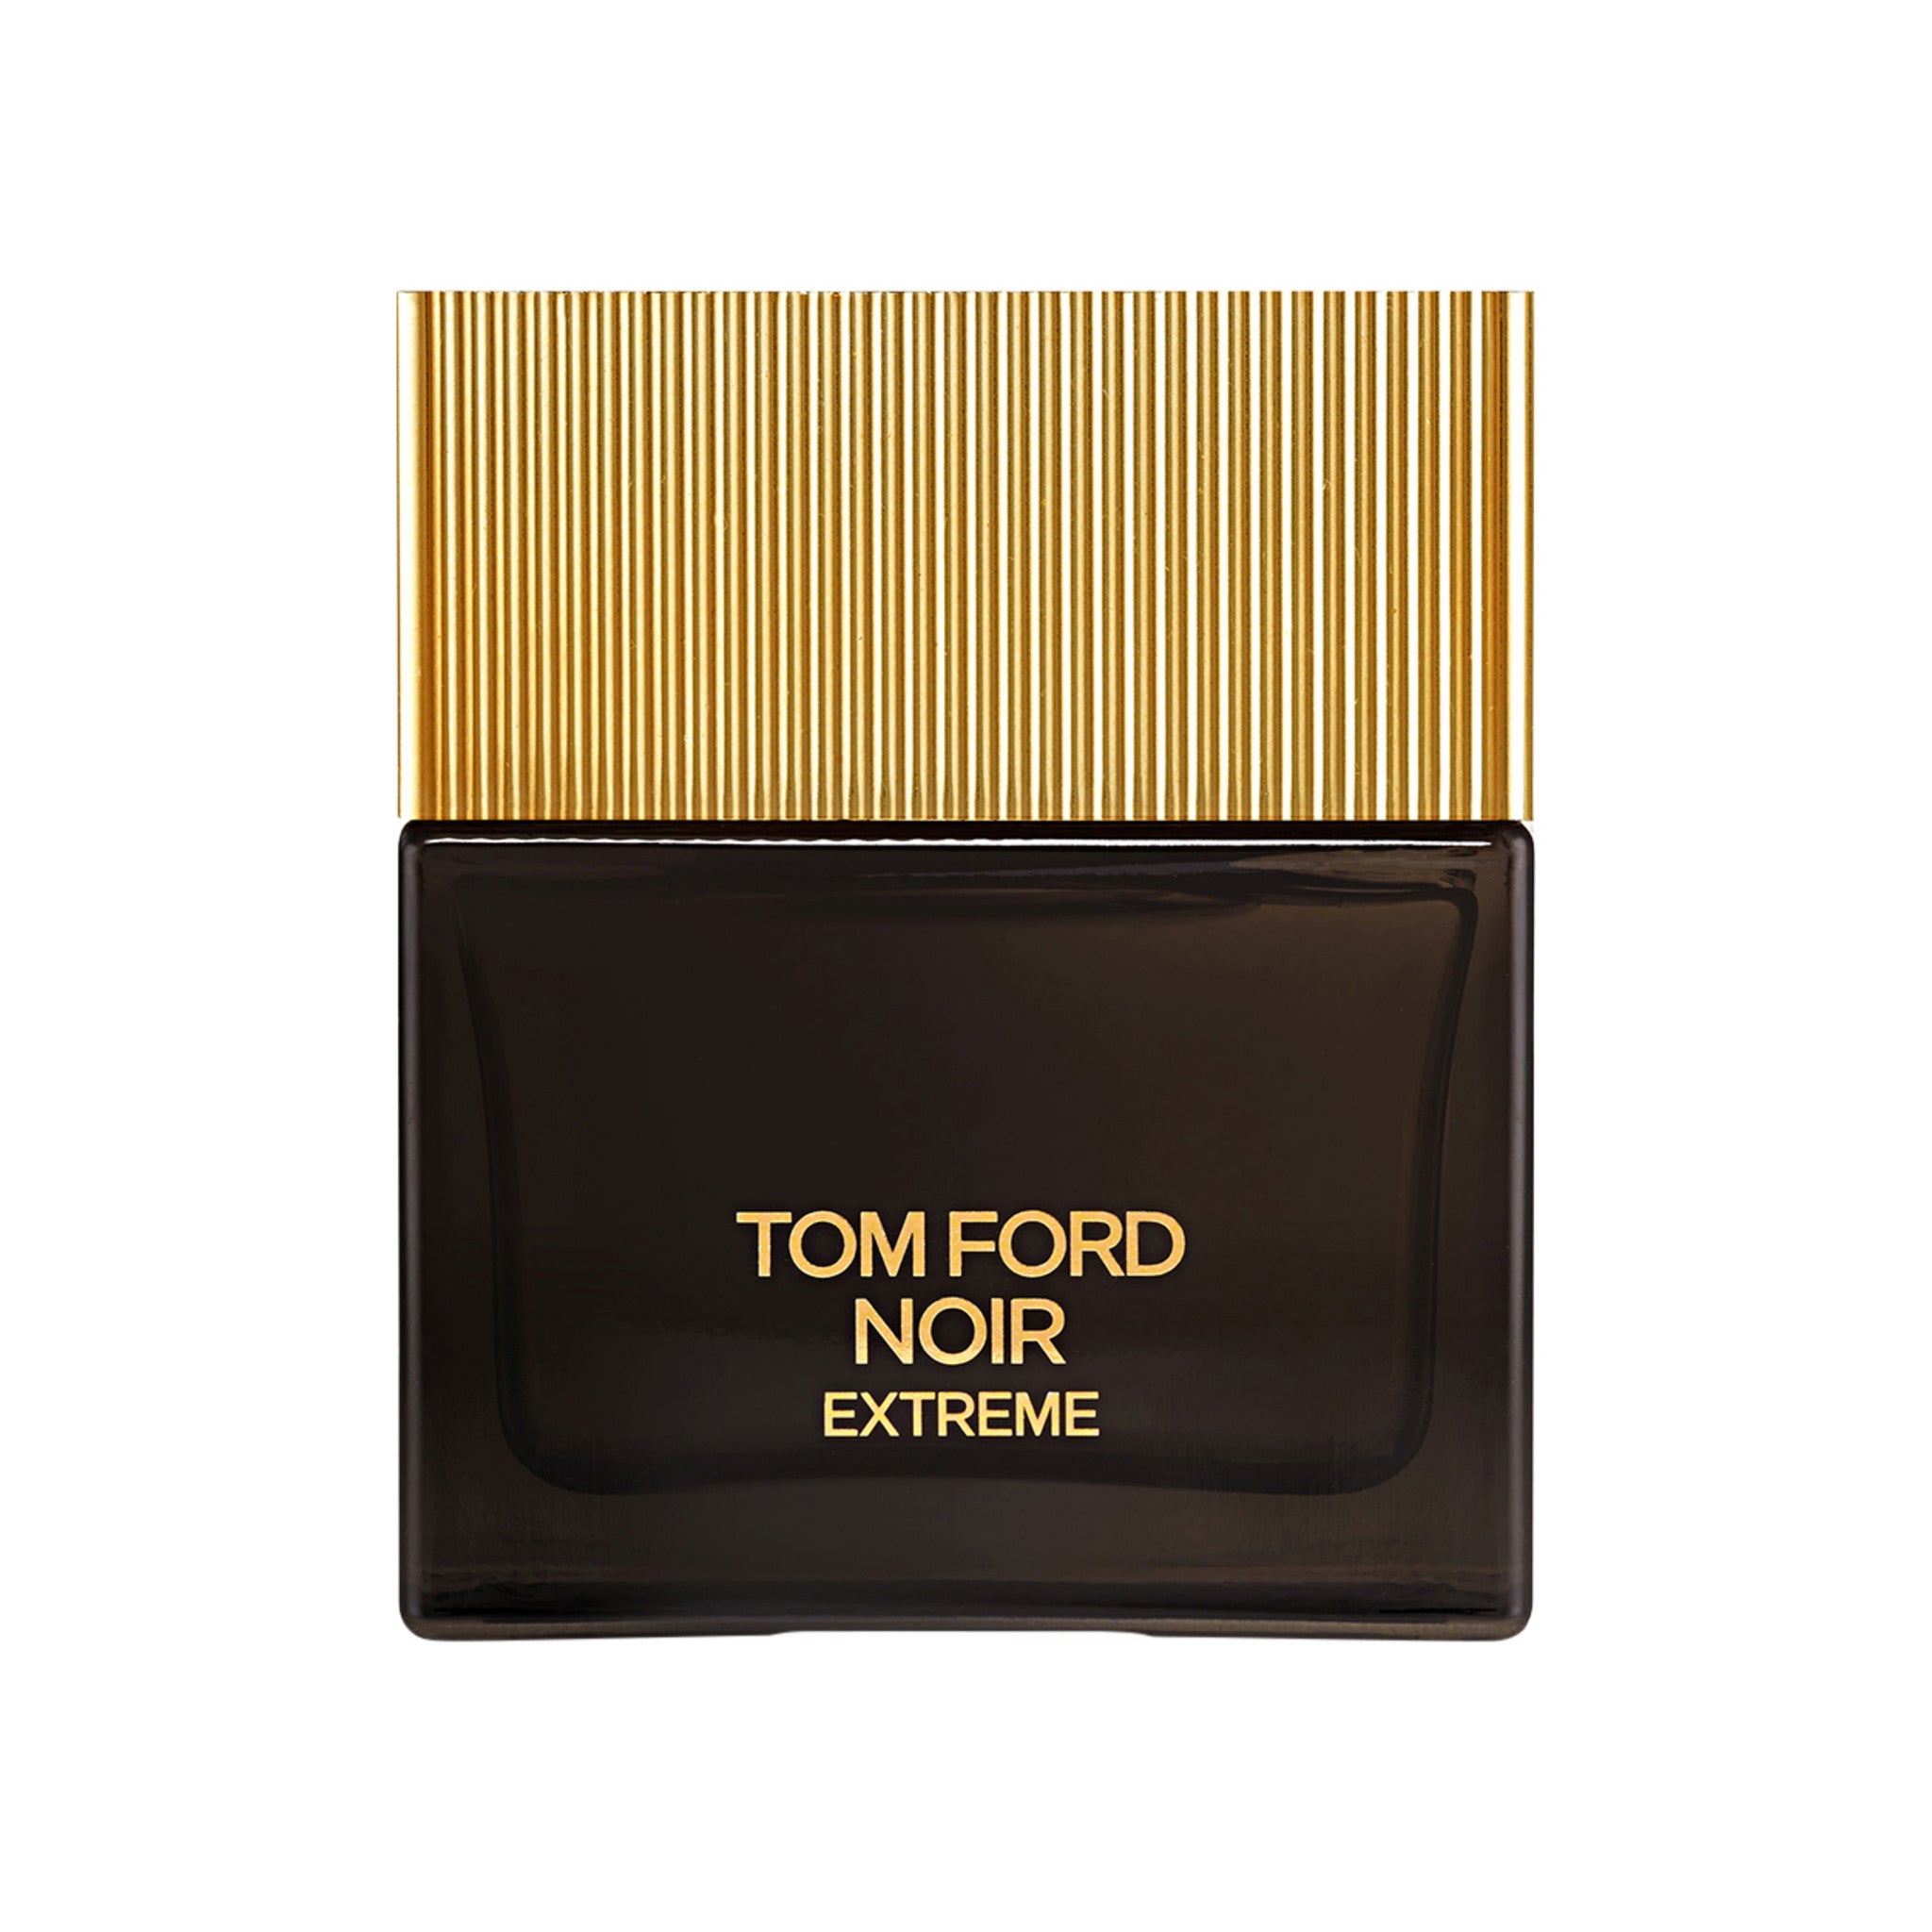 Tom Ford Noir Extreme Eau de Parfum Size variant: 1.7 oz main image.